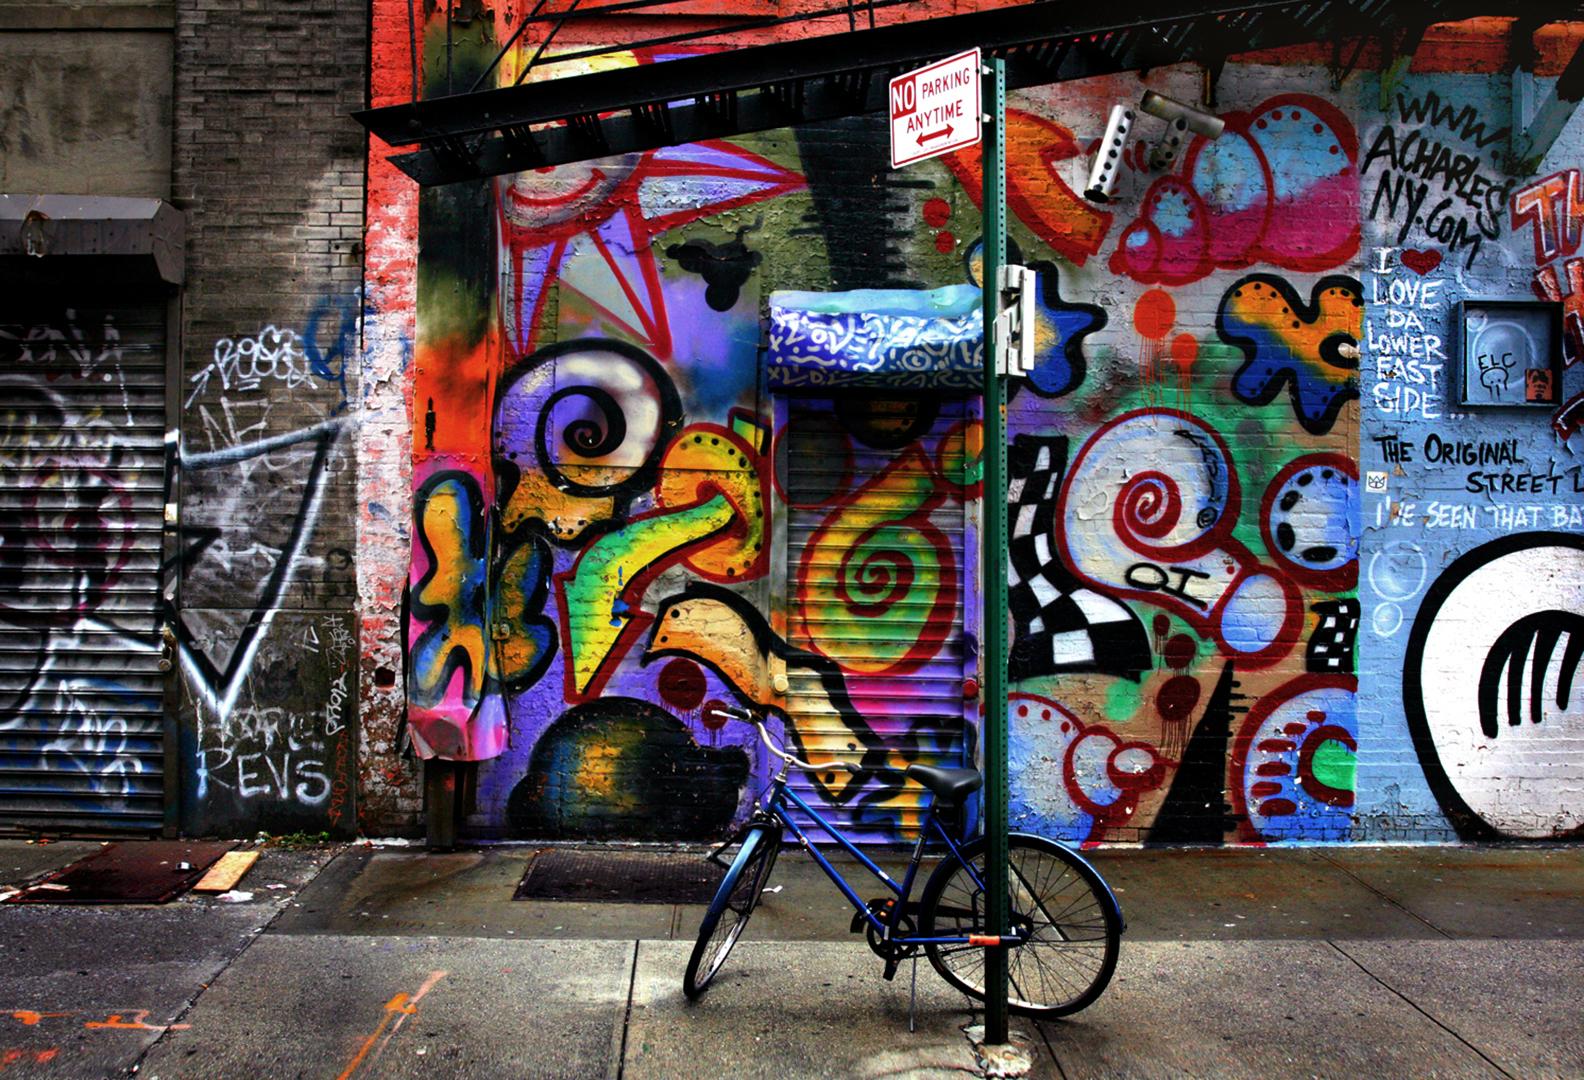 Artistics : Sally Davies (1956)
Titre : Graffiti à vélo (New York)
Année : 2022
Support : Impression à jet d'encre sur papier d'archivage
Edition : 12, plus les épreuves
Taille : 17 x 22 pouces
Condit : Excellent
Inscription : Signé, daté, titré par